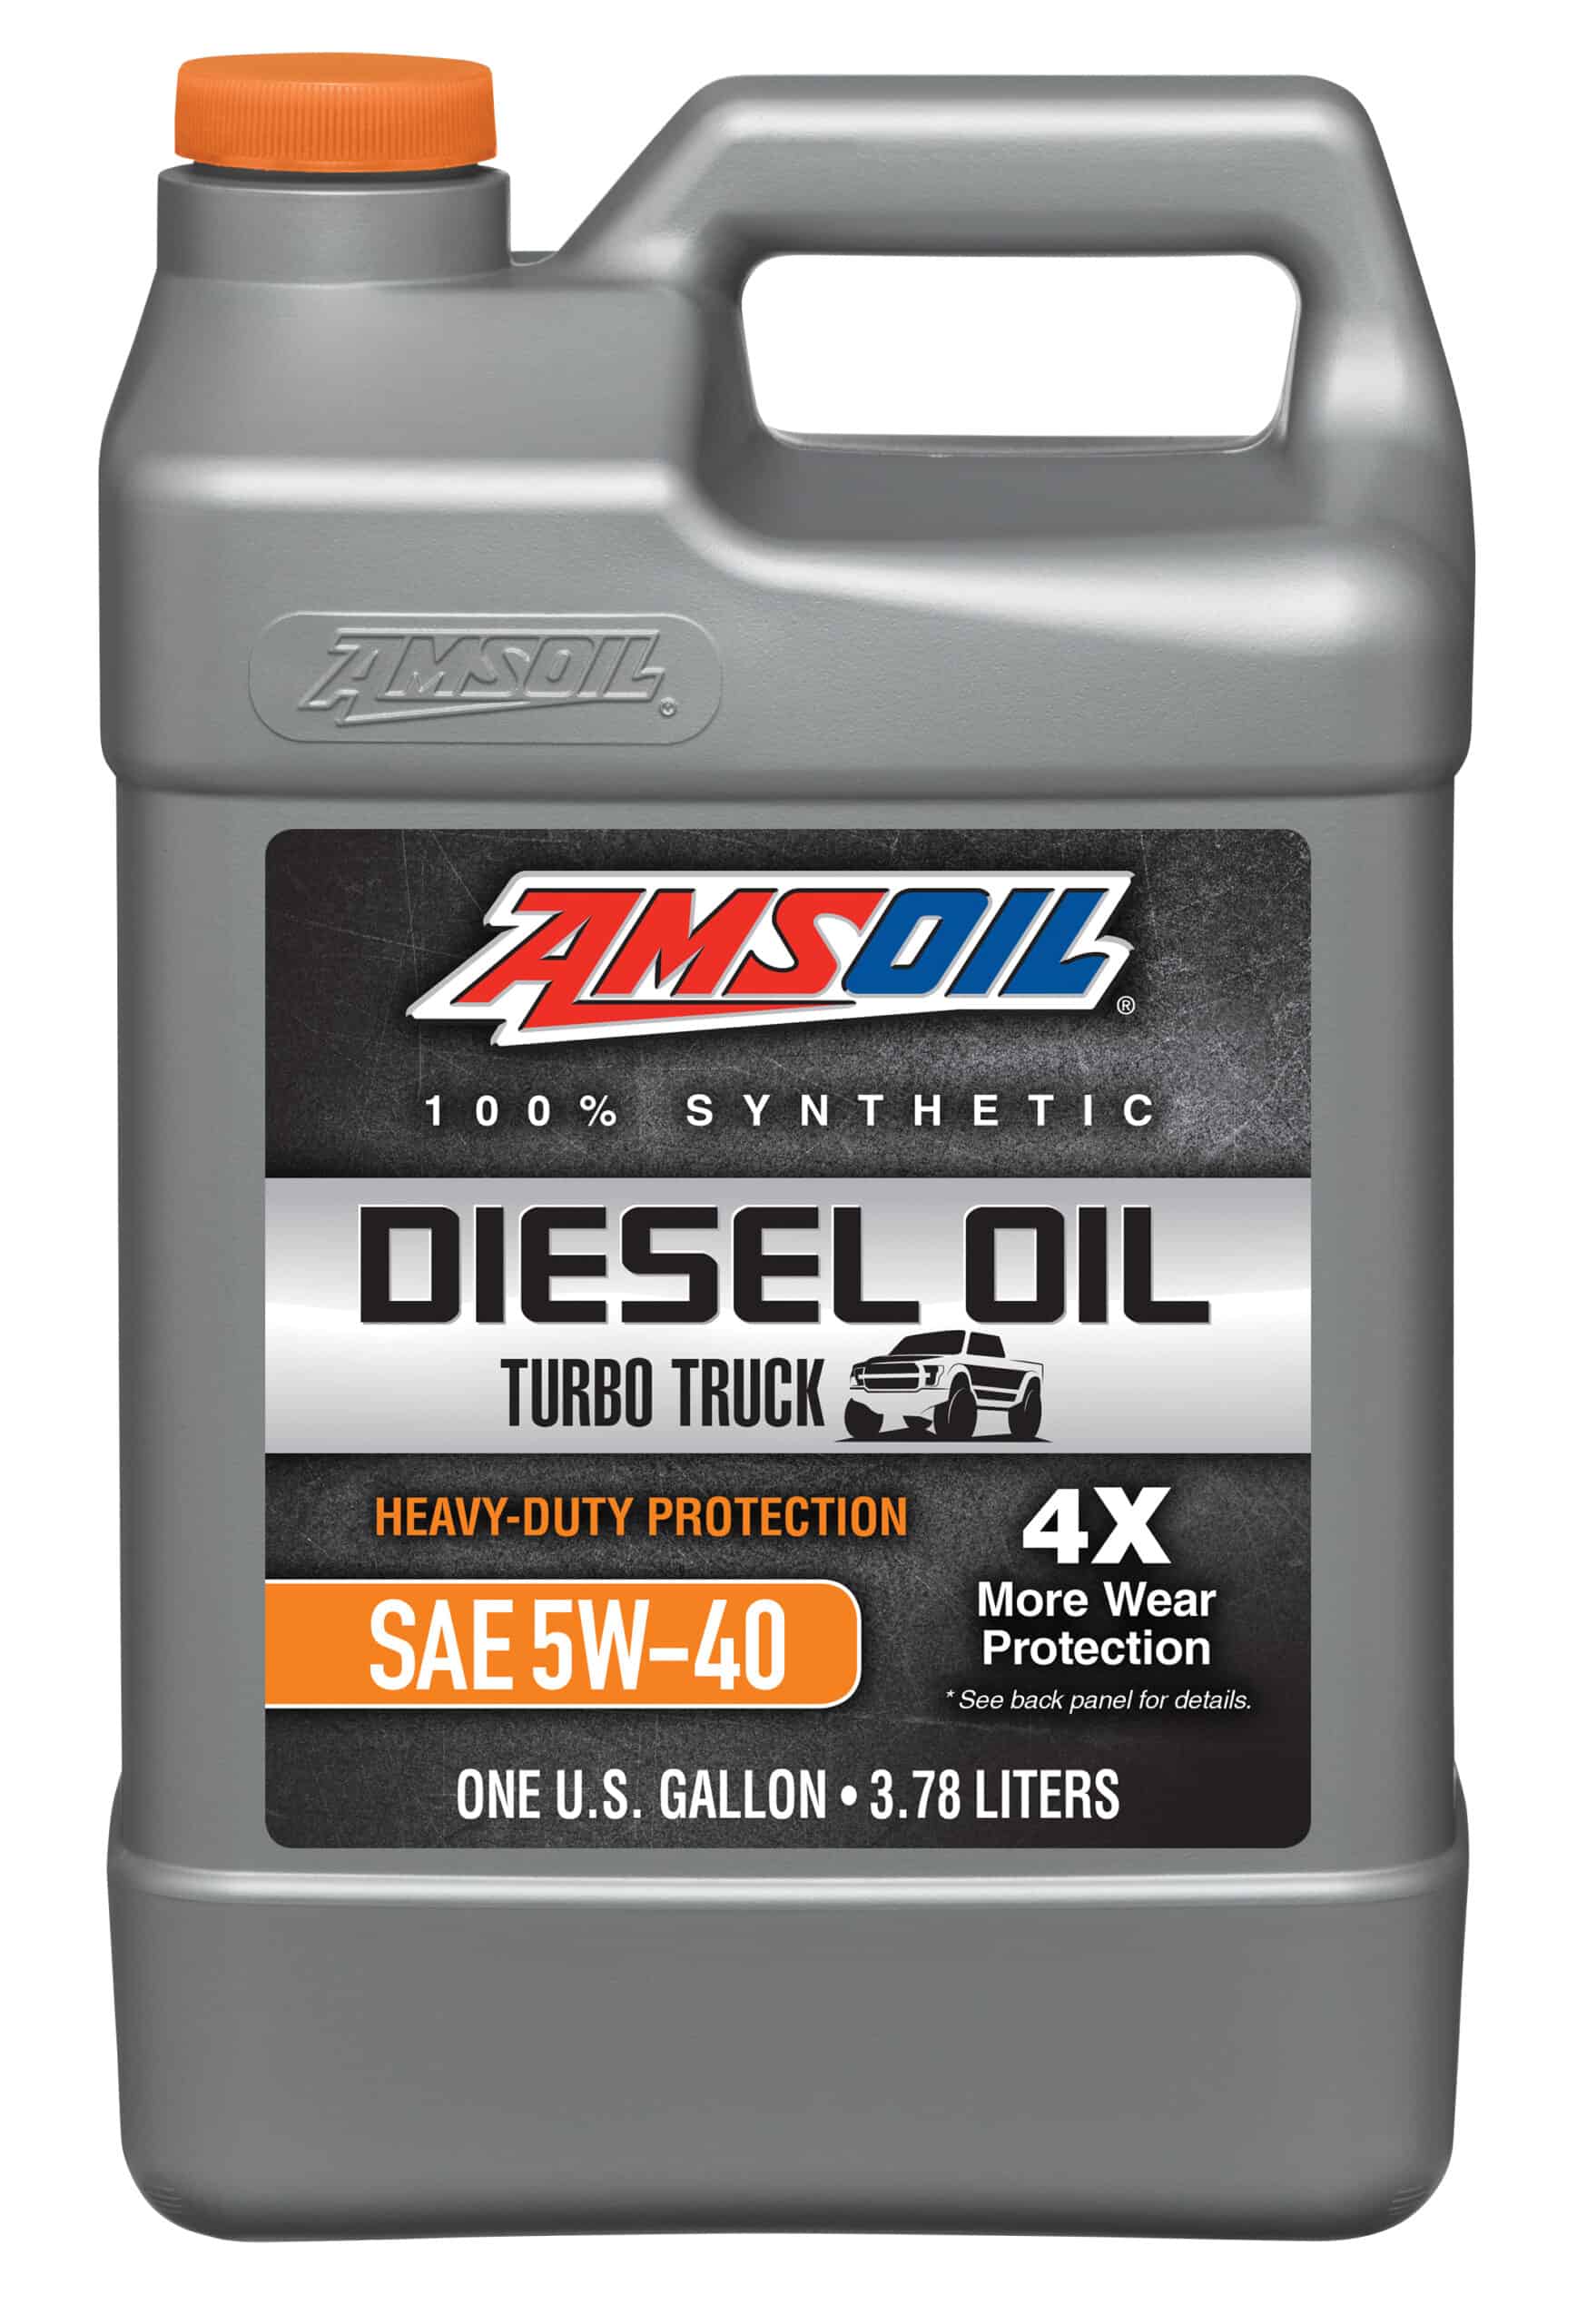 Heavy-Duty Synthetic Diesel Oil